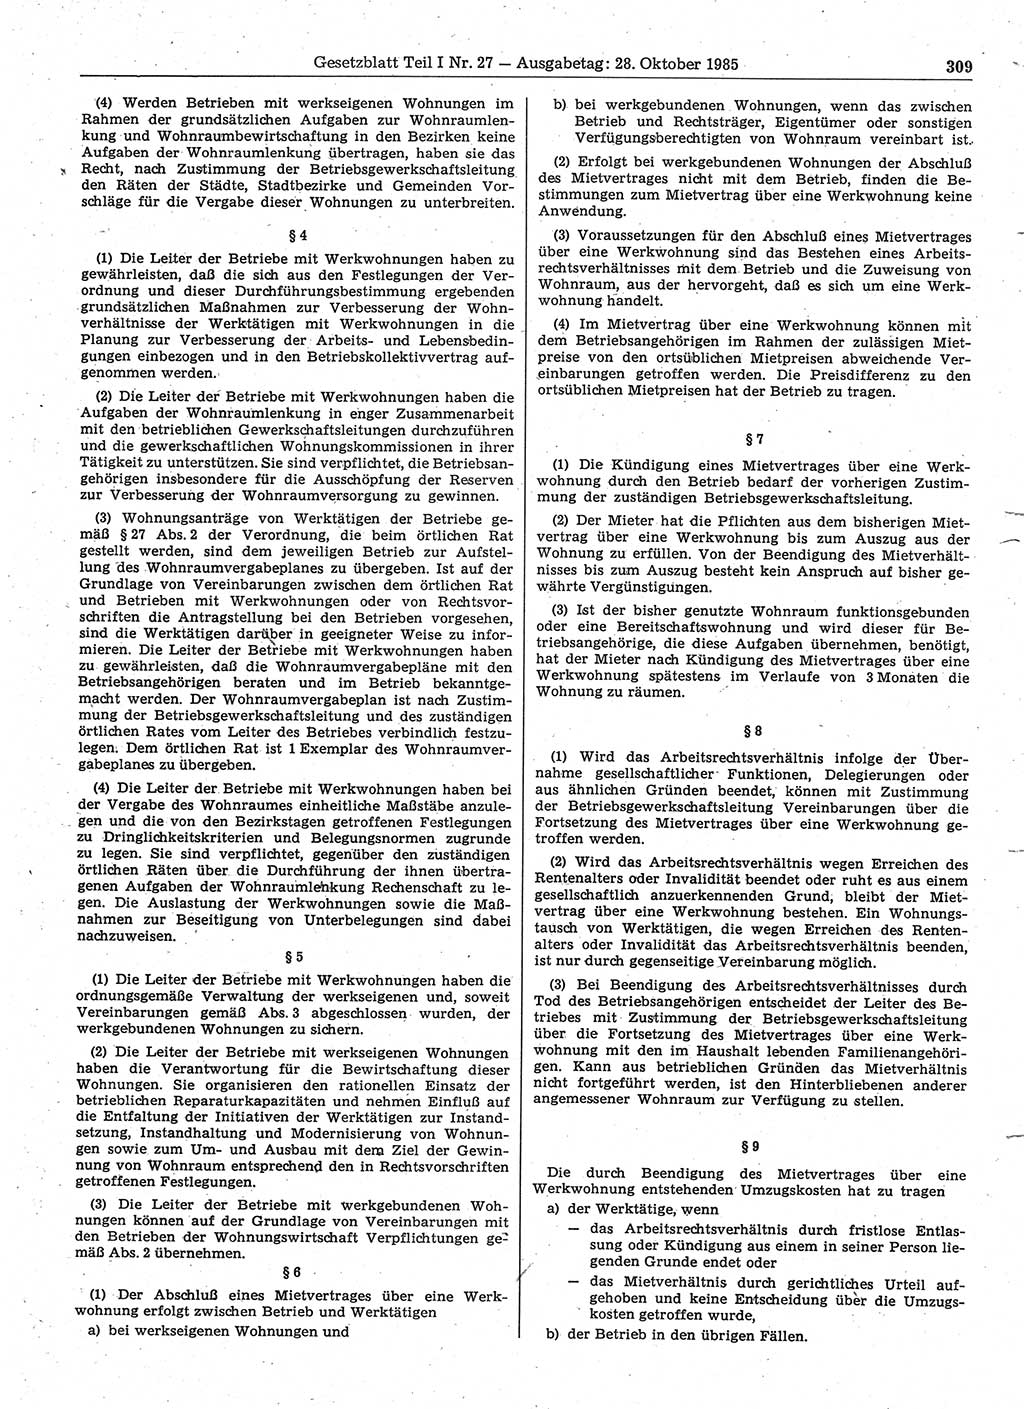 Gesetzblatt (GBl.) der Deutschen Demokratischen Republik (DDR) Teil Ⅰ 1985, Seite 309 (GBl. DDR Ⅰ 1985, S. 309)